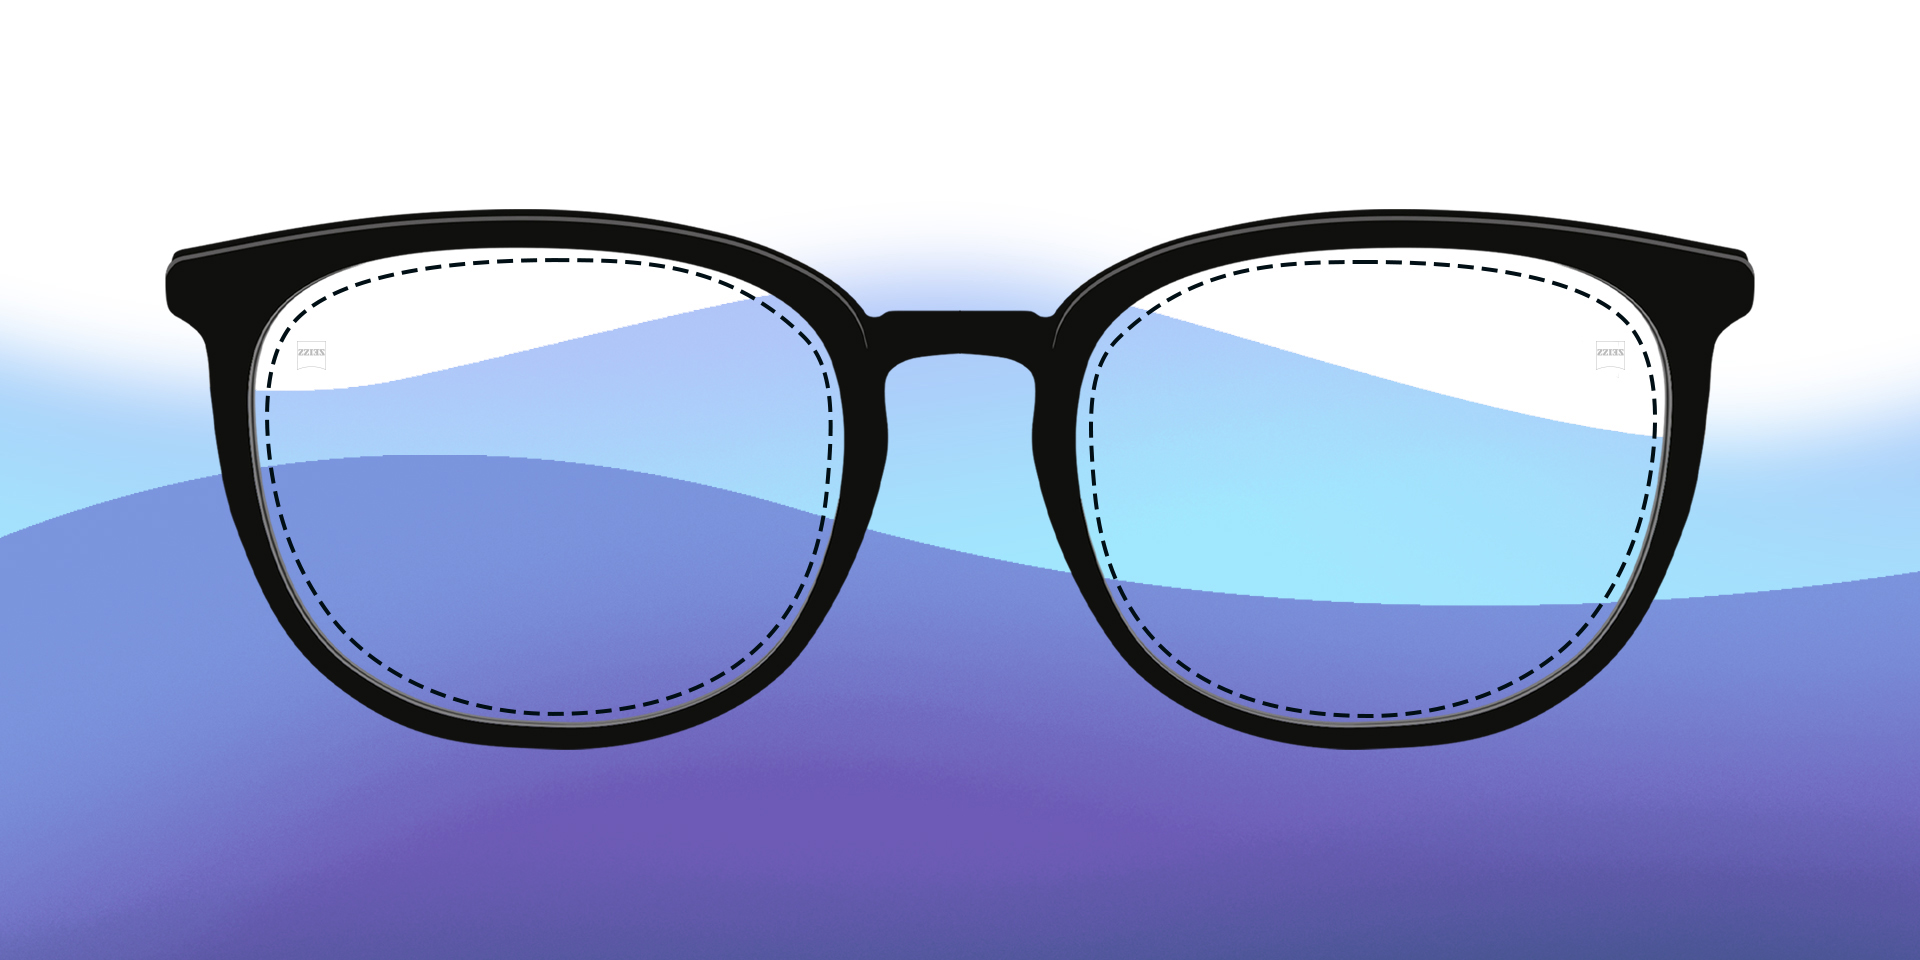 Una imagen de lentes monofocales ilustradas sobre un fondo colorido.